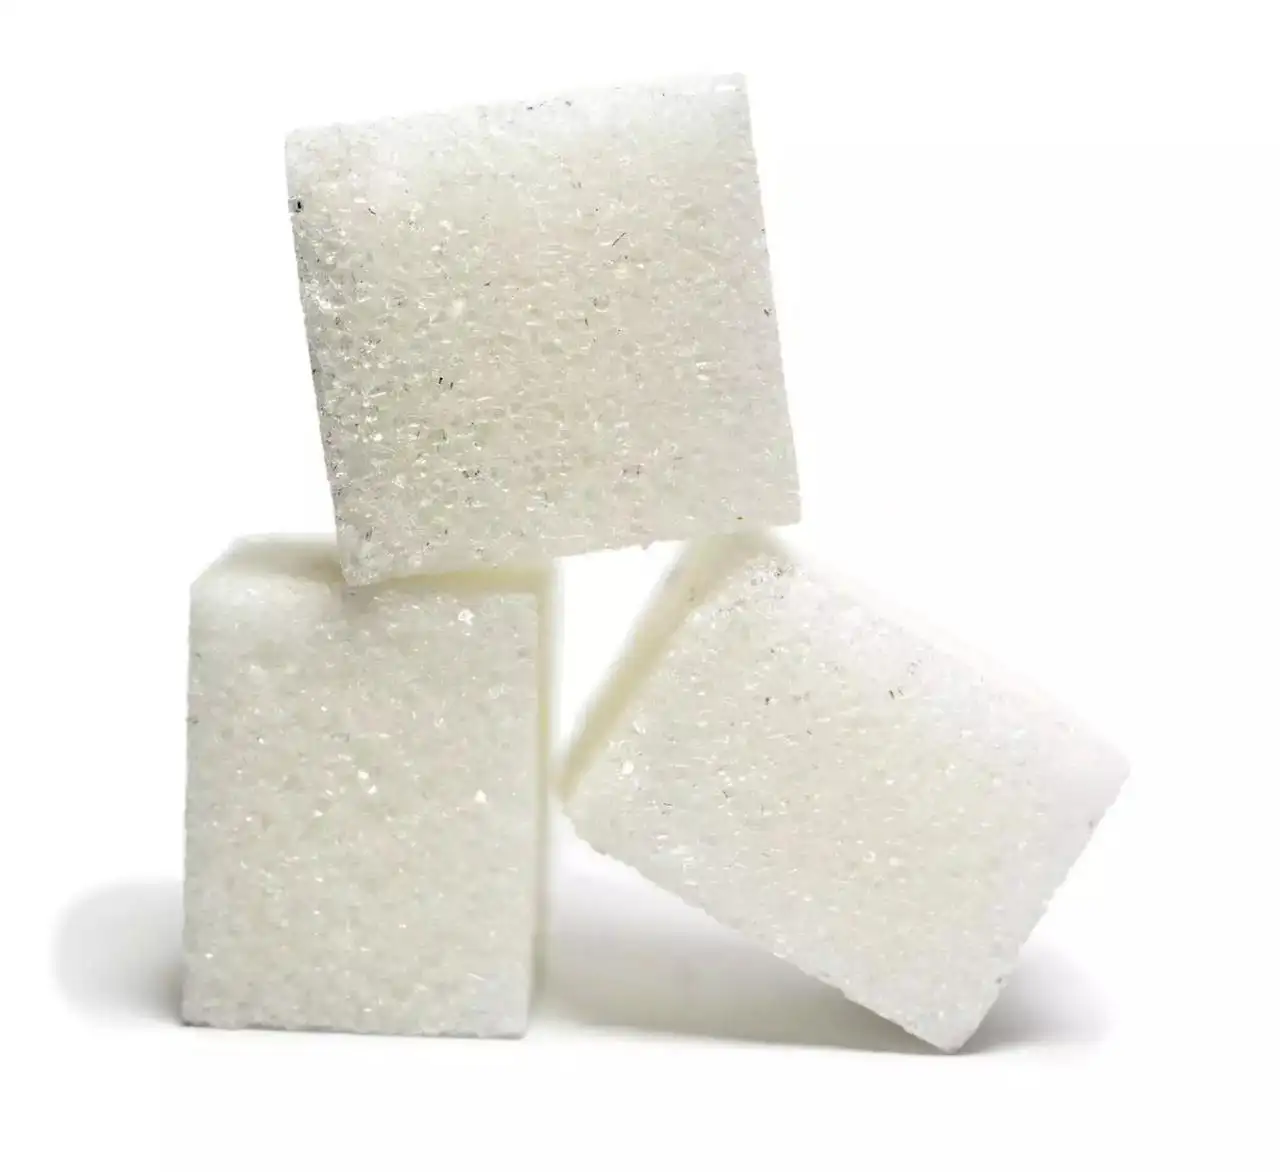 Alta Qualidade Icumsa 45 Origem Brasileira Açúcar Por Tonela Atacado Fornecedores de Áustria